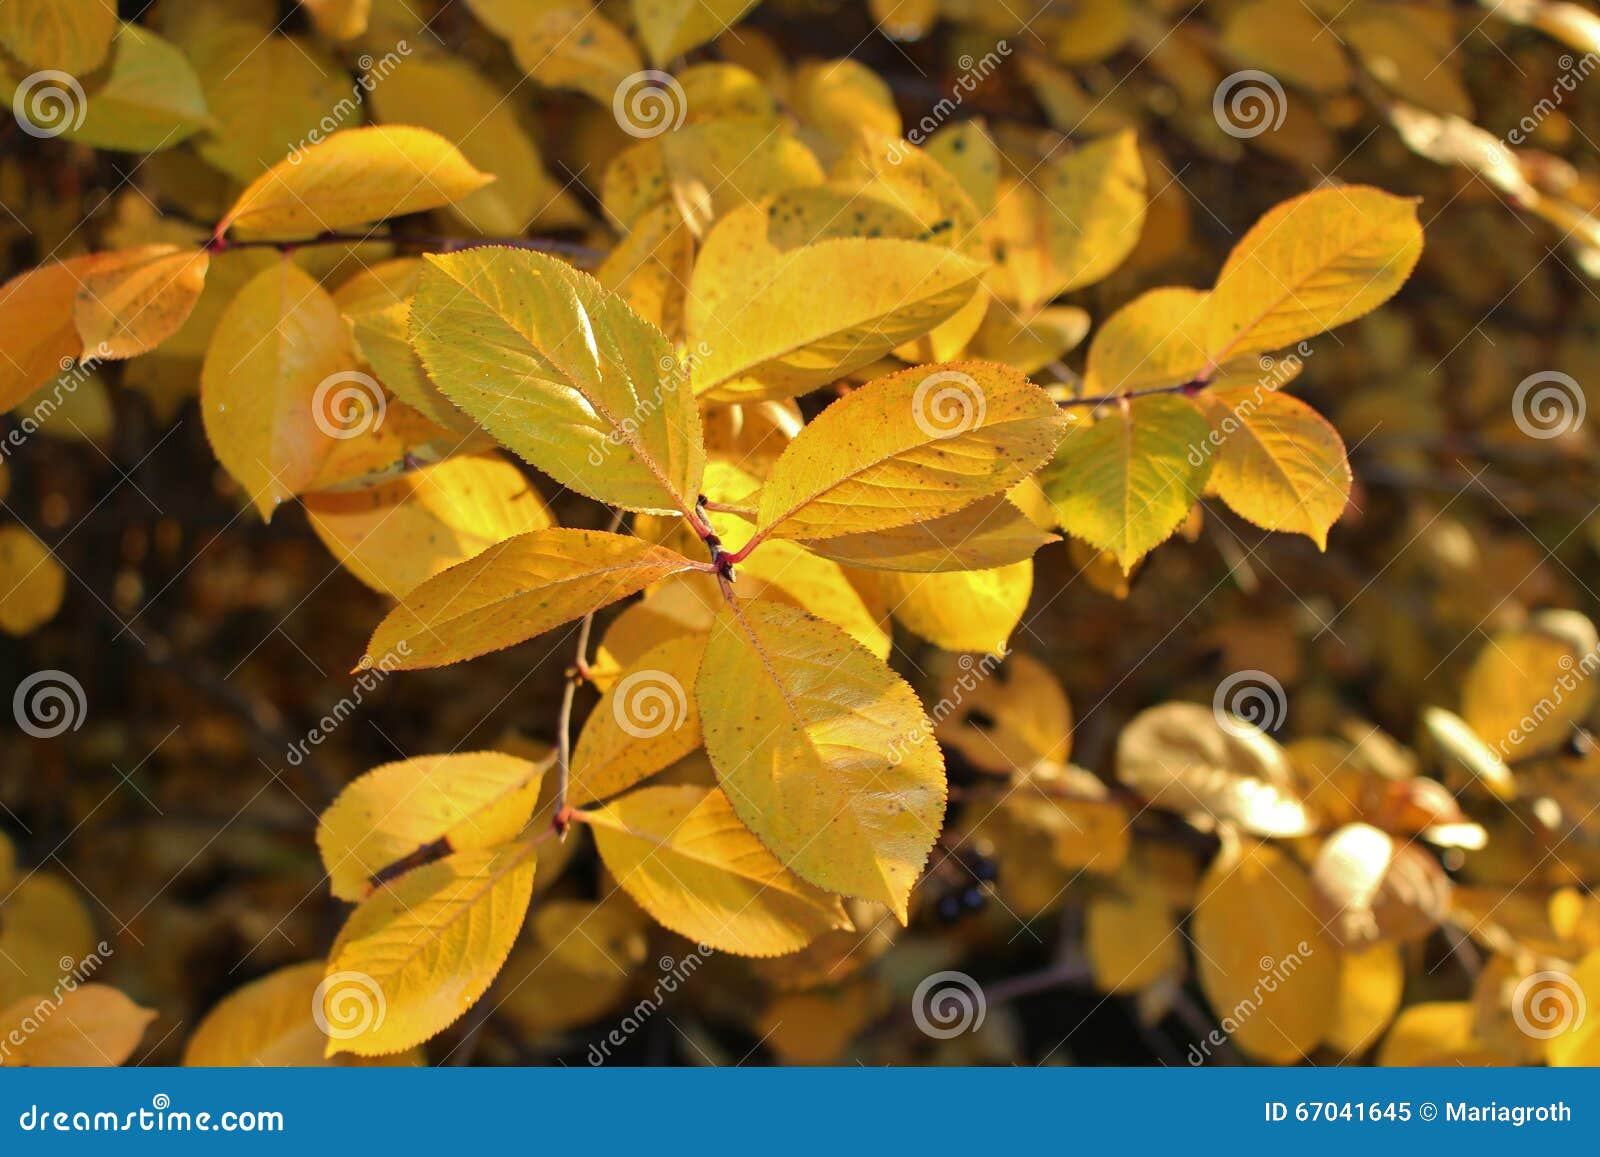 Autumn Glow. Un negro hermoso Ronia del amarillo del otoño iluminado por el sol de la tarde